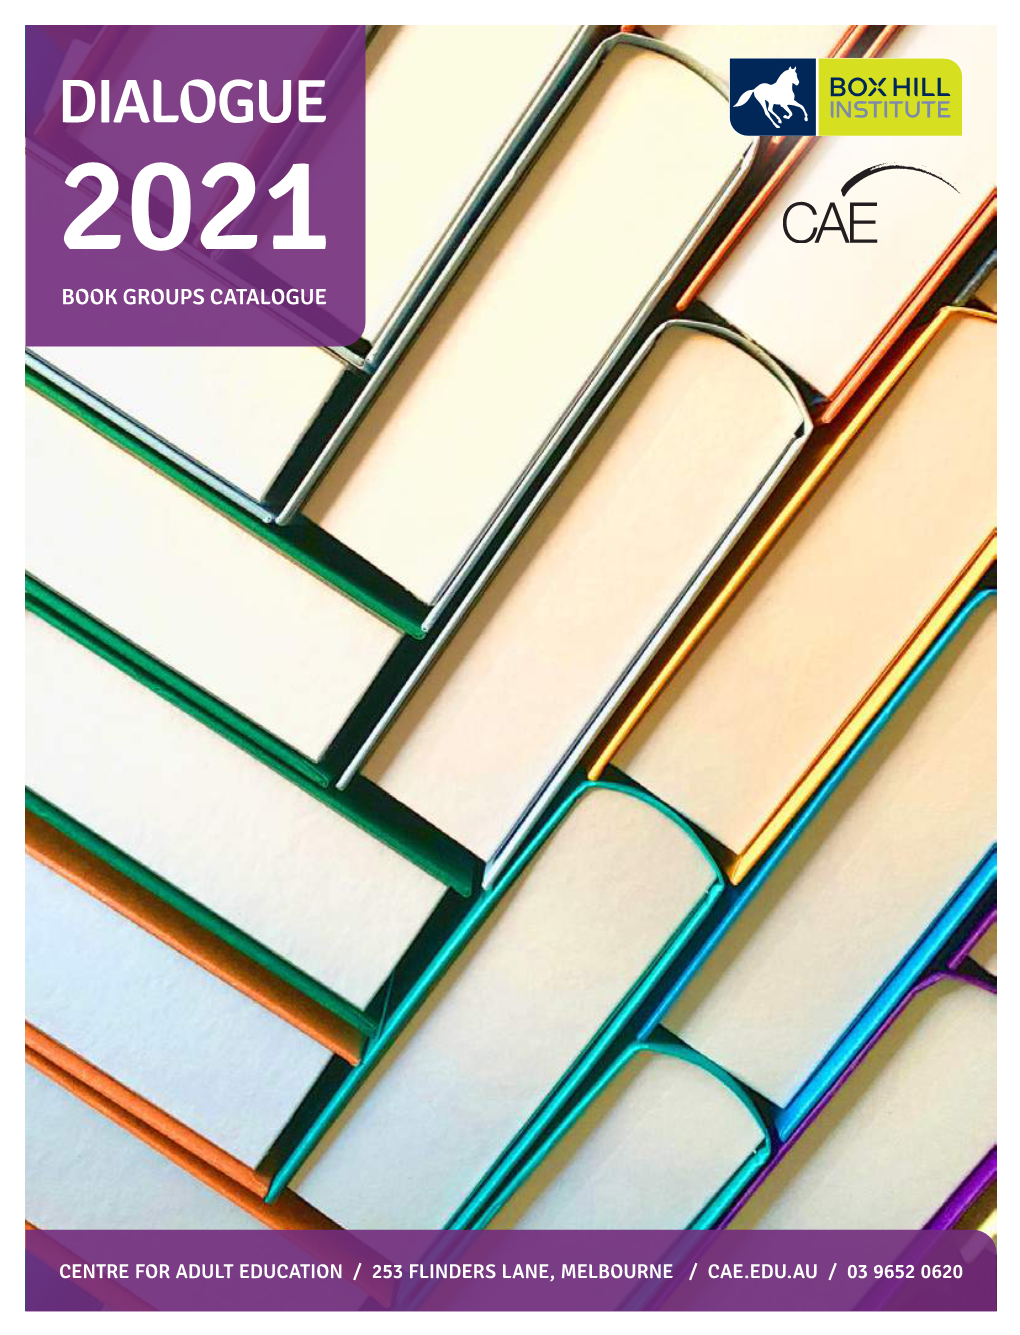 Dialogue 2021 Book Groups Catalogue